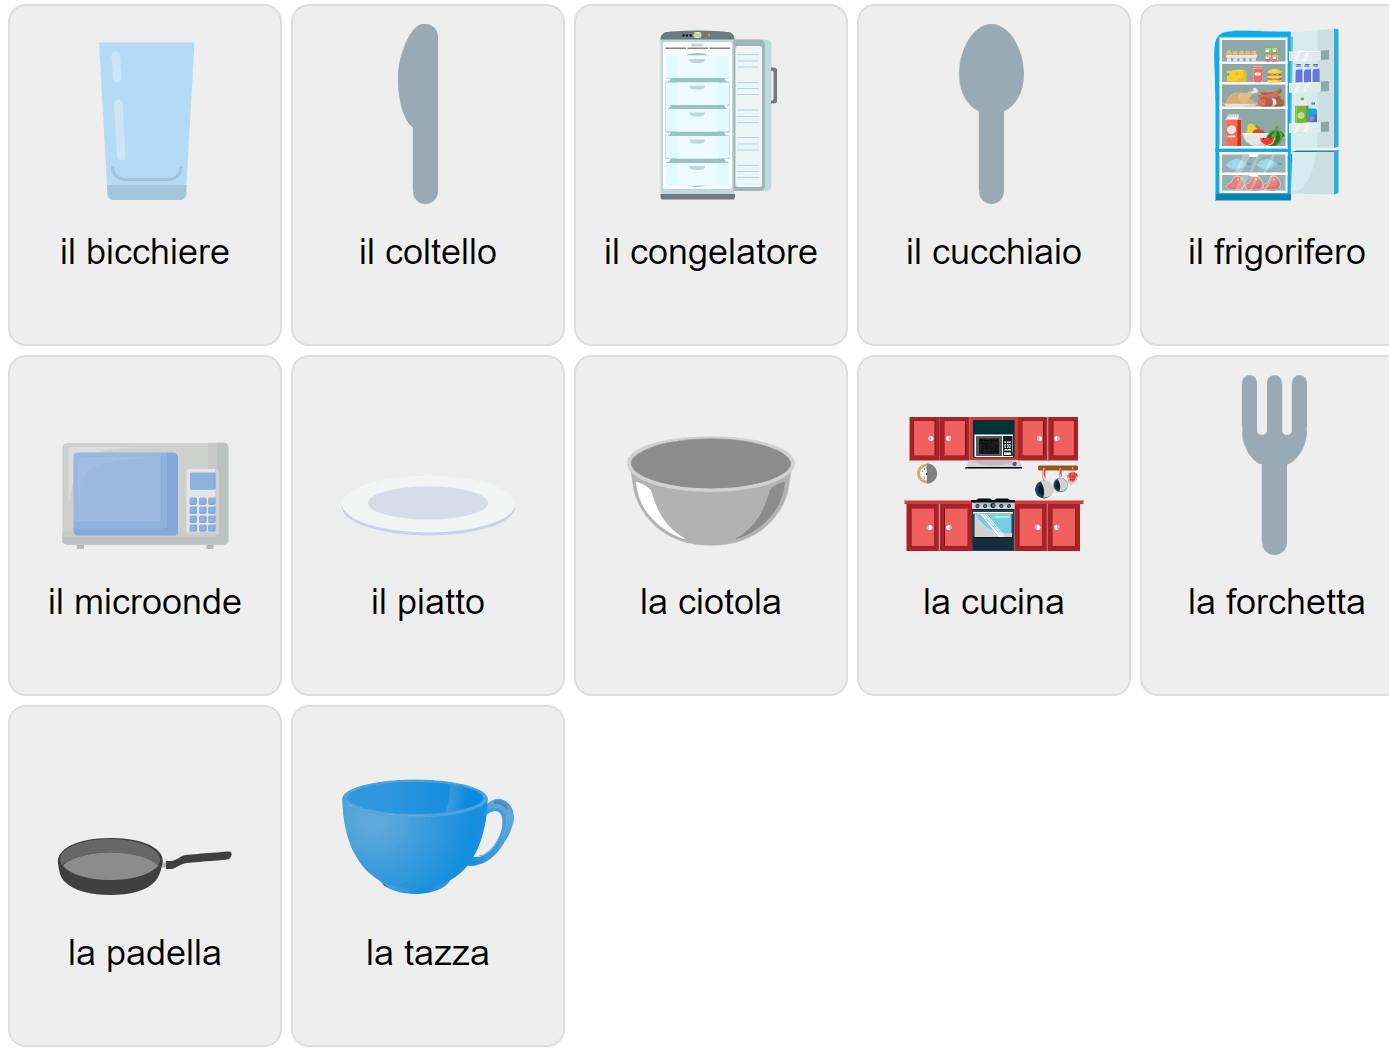 Küchenvokabular auf Italienisch